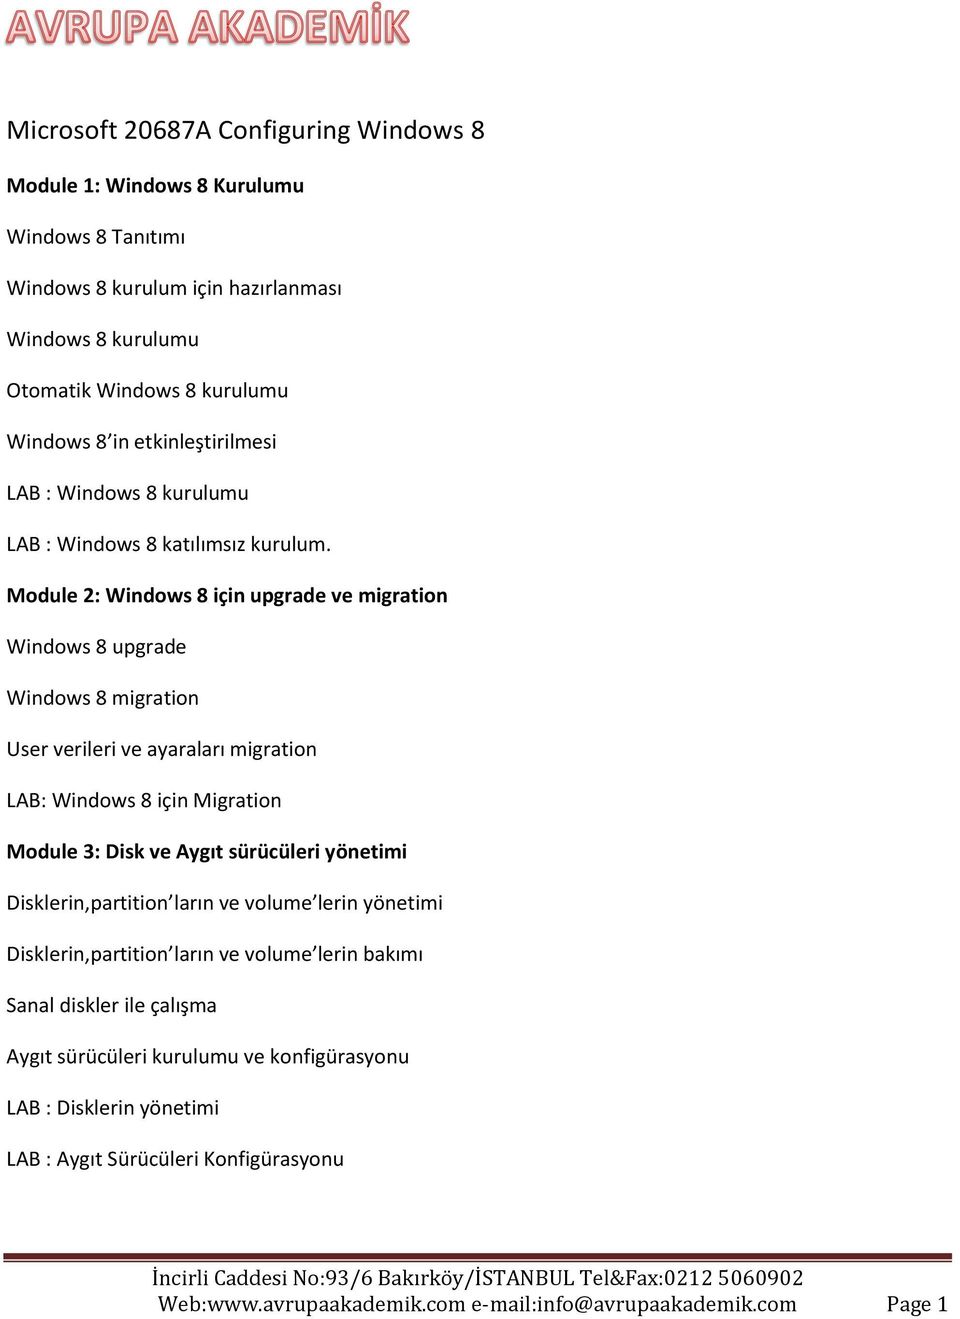 Module 2: Windows 8 için upgrade ve migration Windows 8 upgrade Windows 8 migration User verileri ve ayaraları migration LAB: Windows 8 için Migration Module 3: Disk ve Aygıt sürücüleri